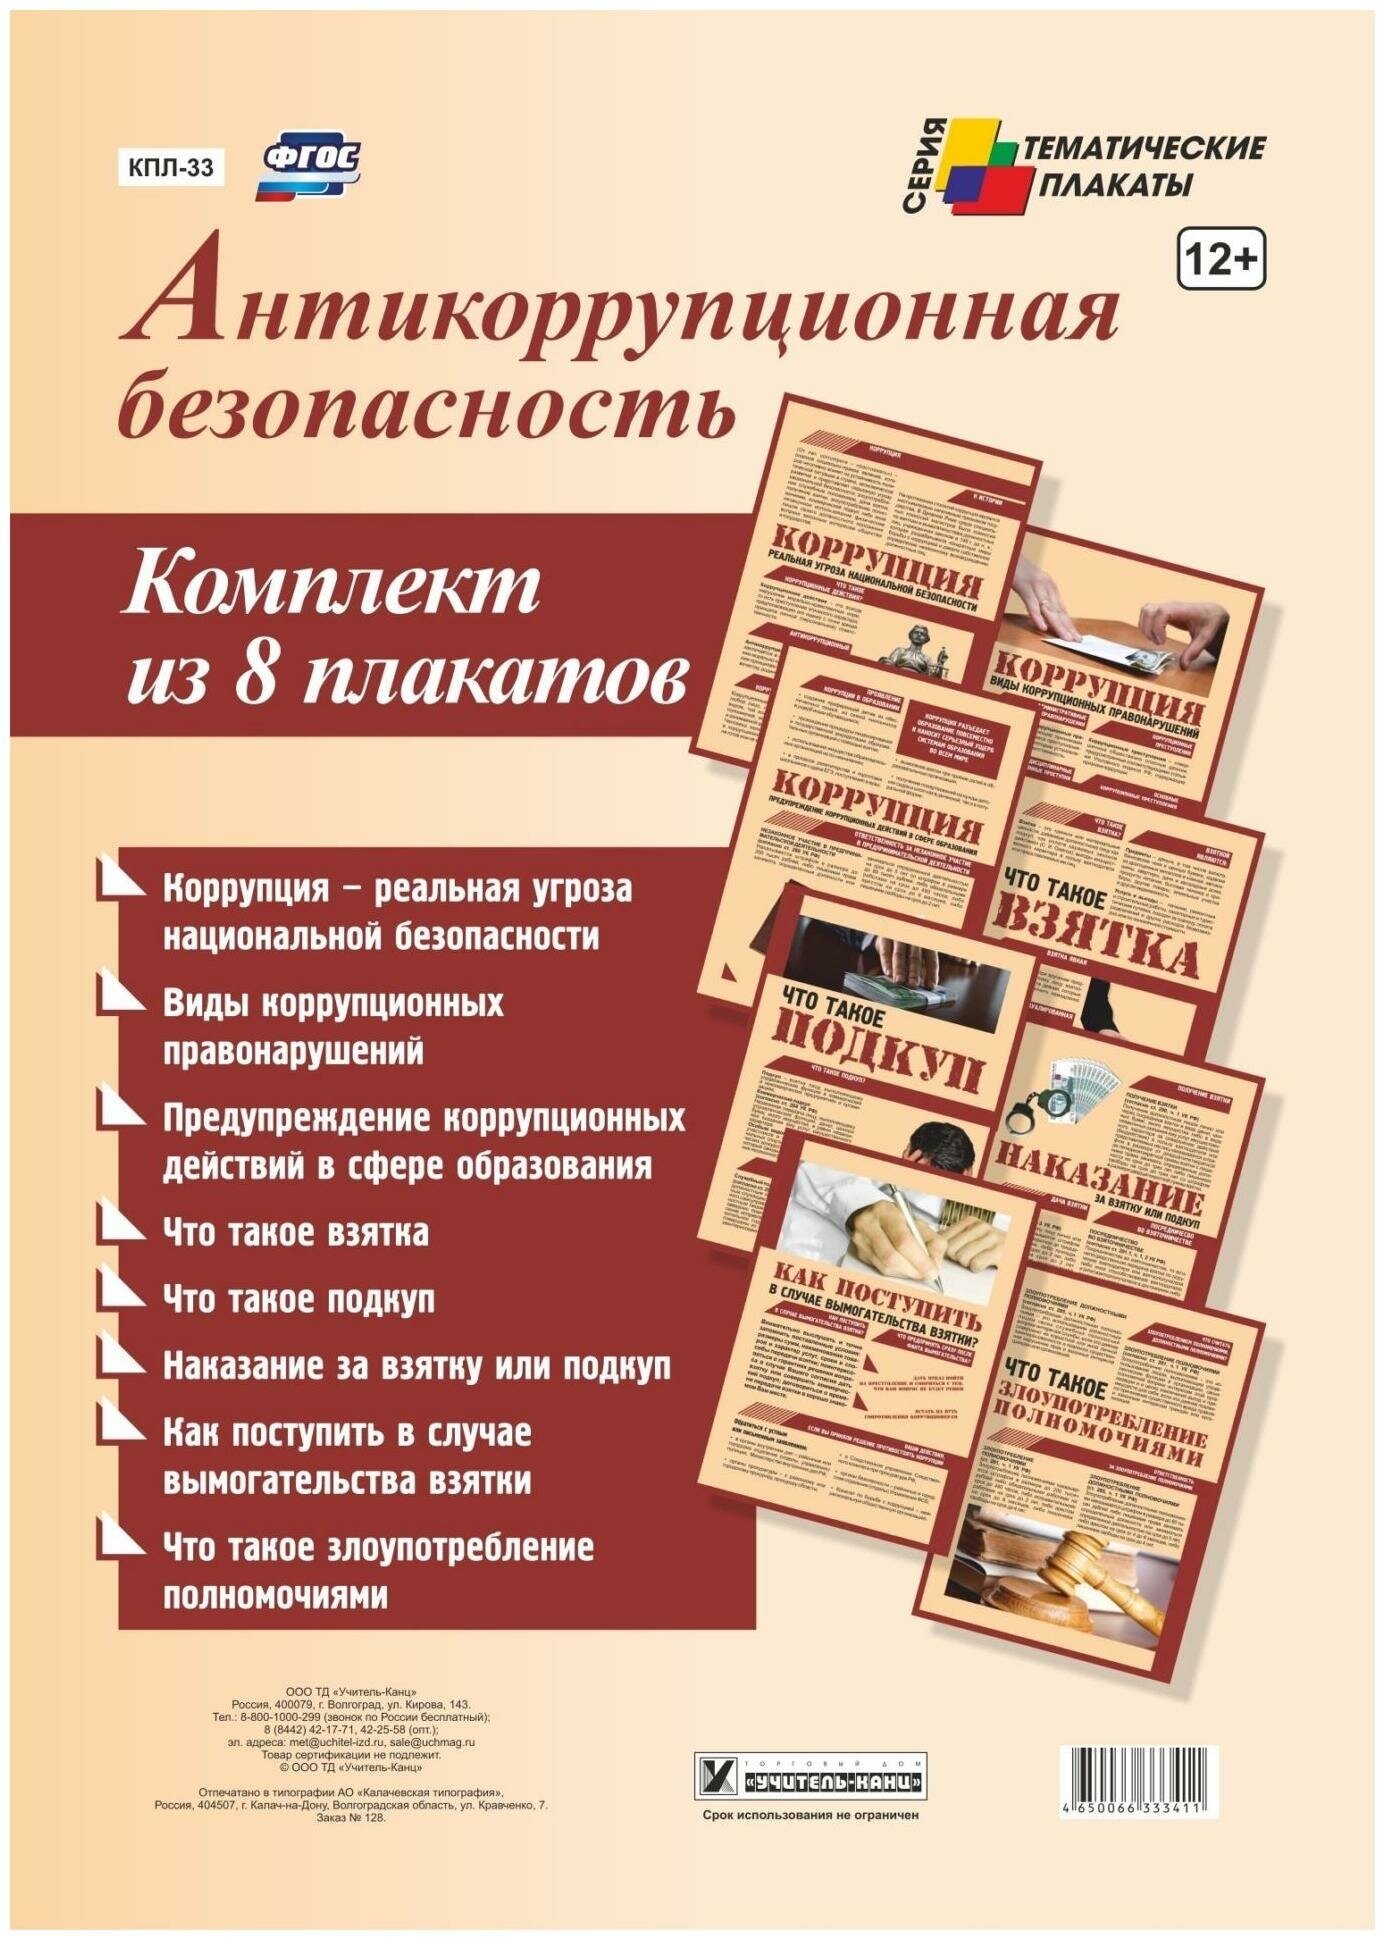 Комплект плакатов "Антикоррупционная безопасность". - фото №1